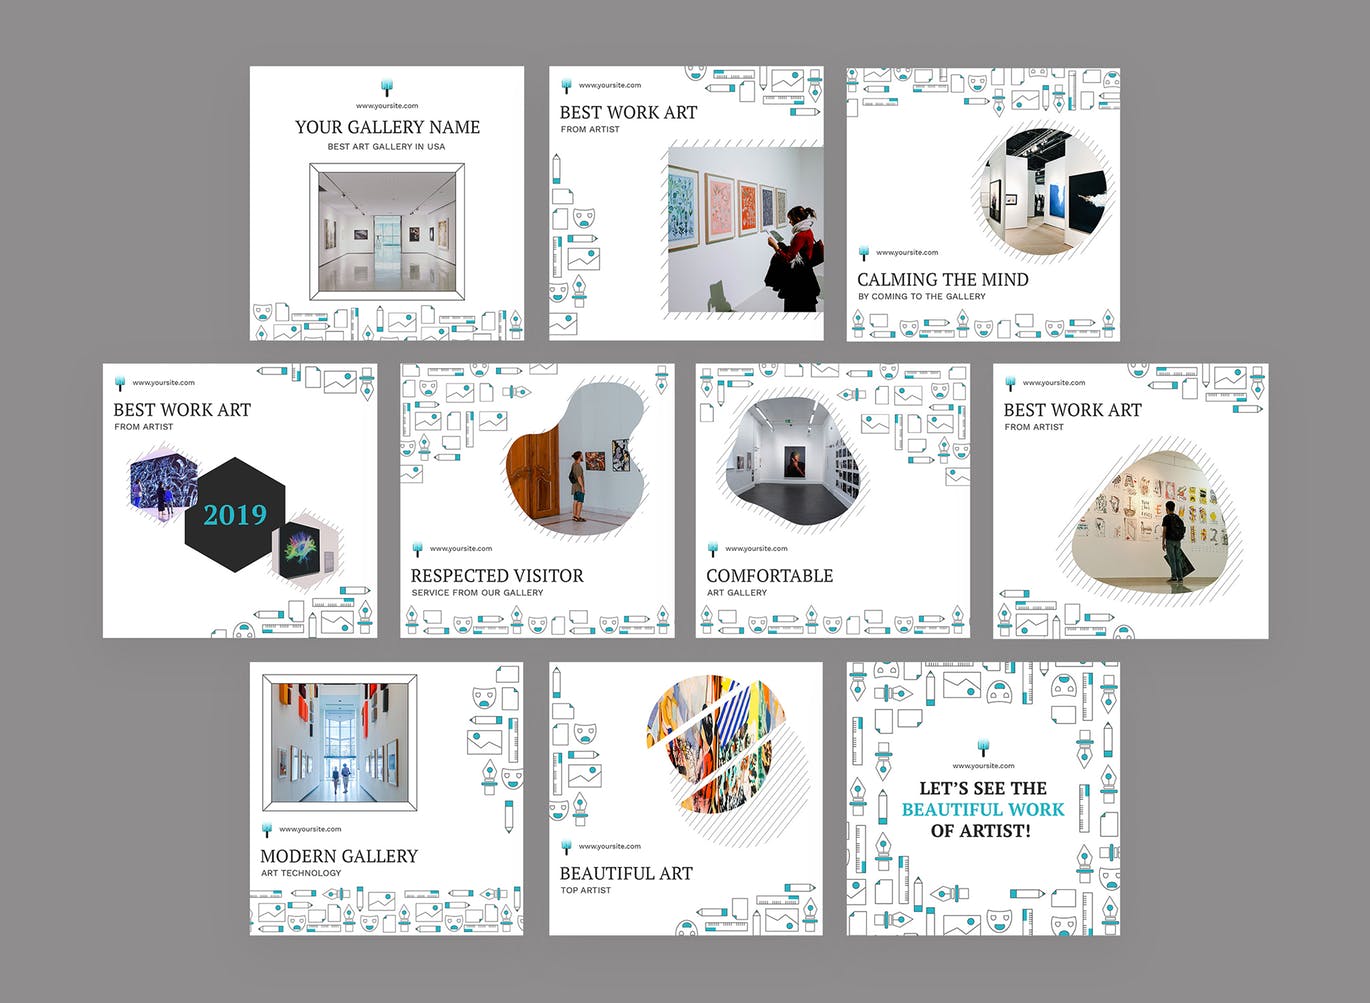 创意艺术展览主题Instagram信息流广告设计模板素材中国精选 Konst – Instagram Feeds Pack插图(1)